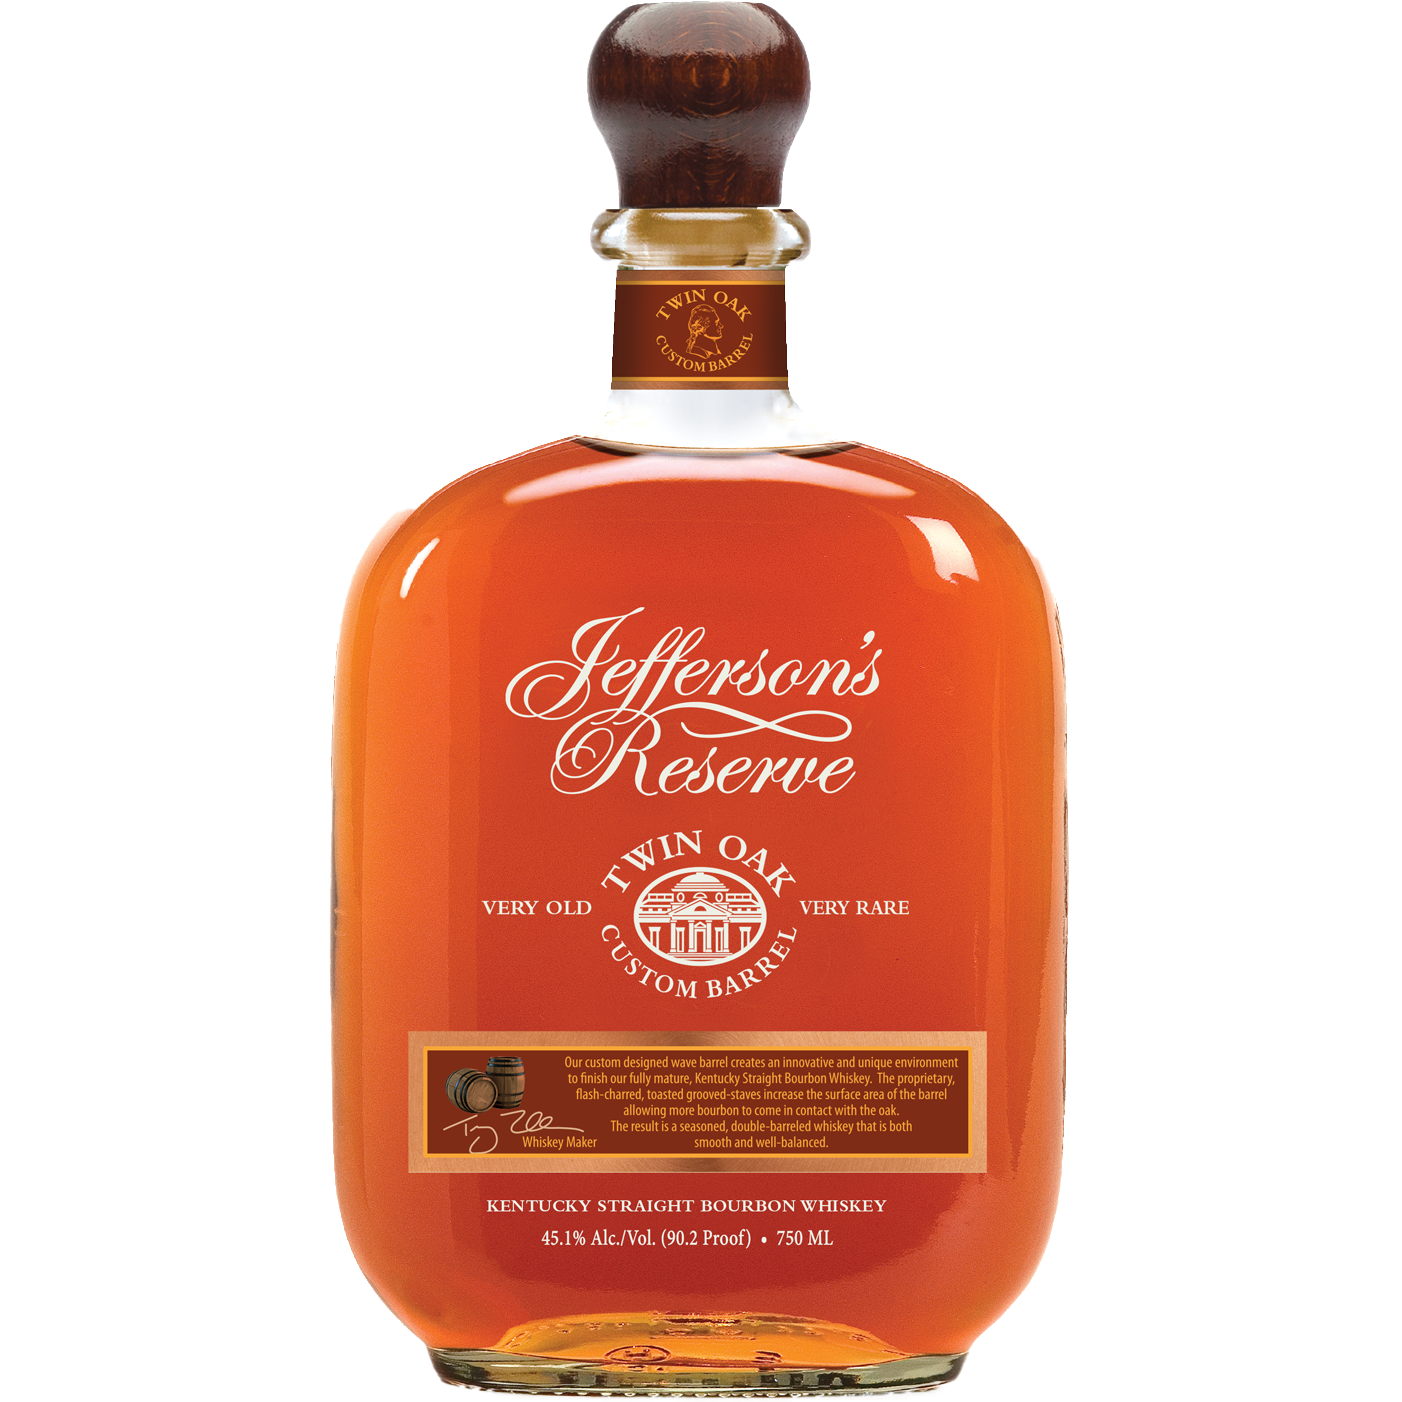 Jefferson's Reserve 'Twin Oak Custom Barrel' Kentucky Straight Bourbon Whiskey